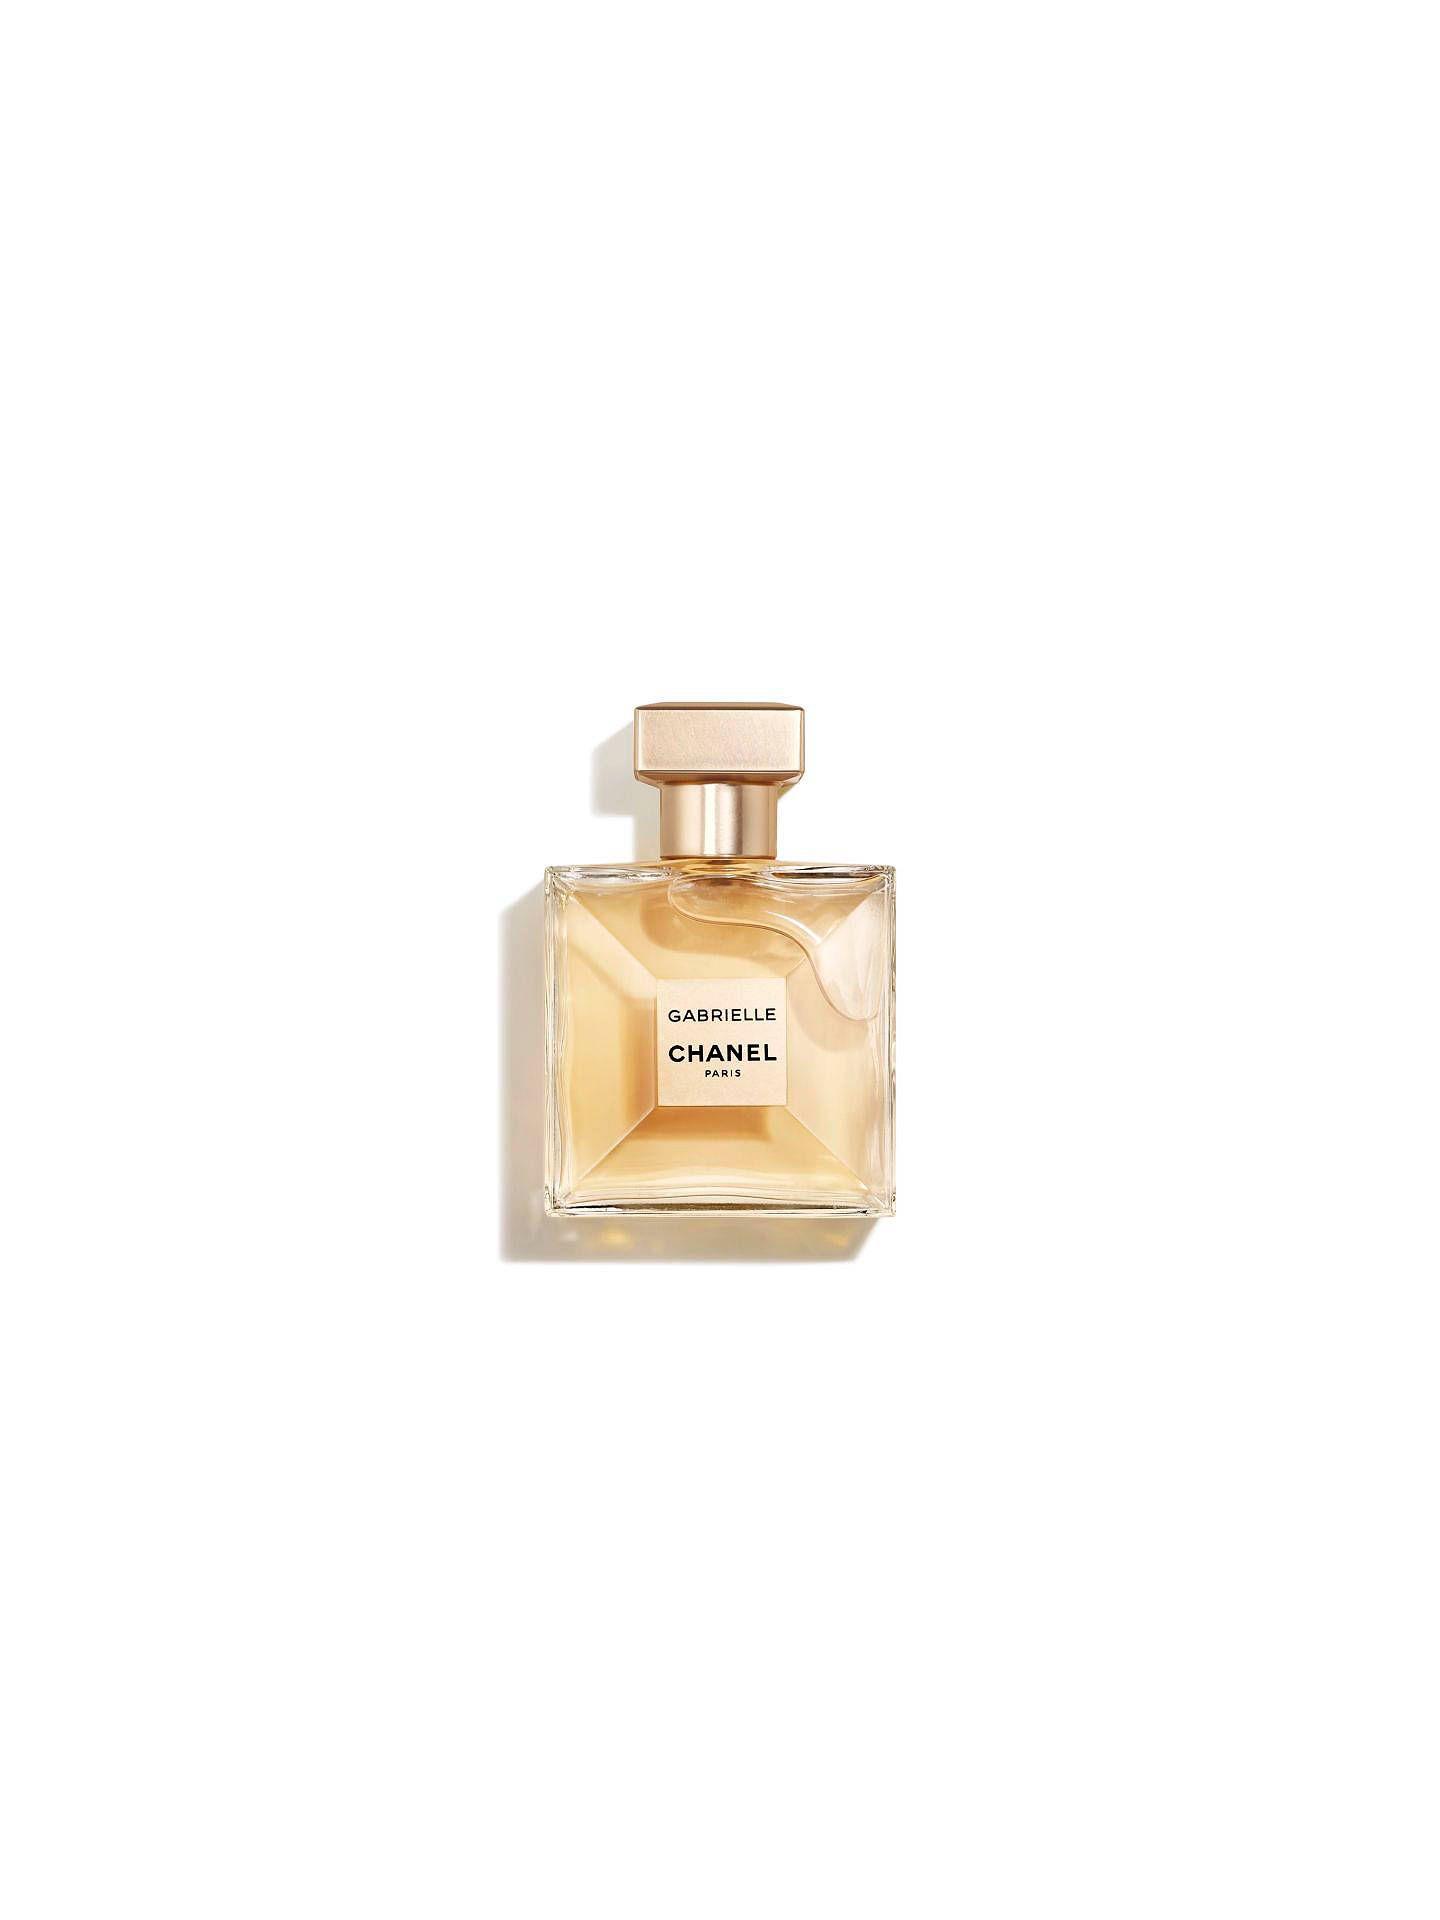 Gabrielle Chanel Paris Logo - CHANEL GABRIELLE CHANEL Eau de Parfum Spray at John Lewis & Partners